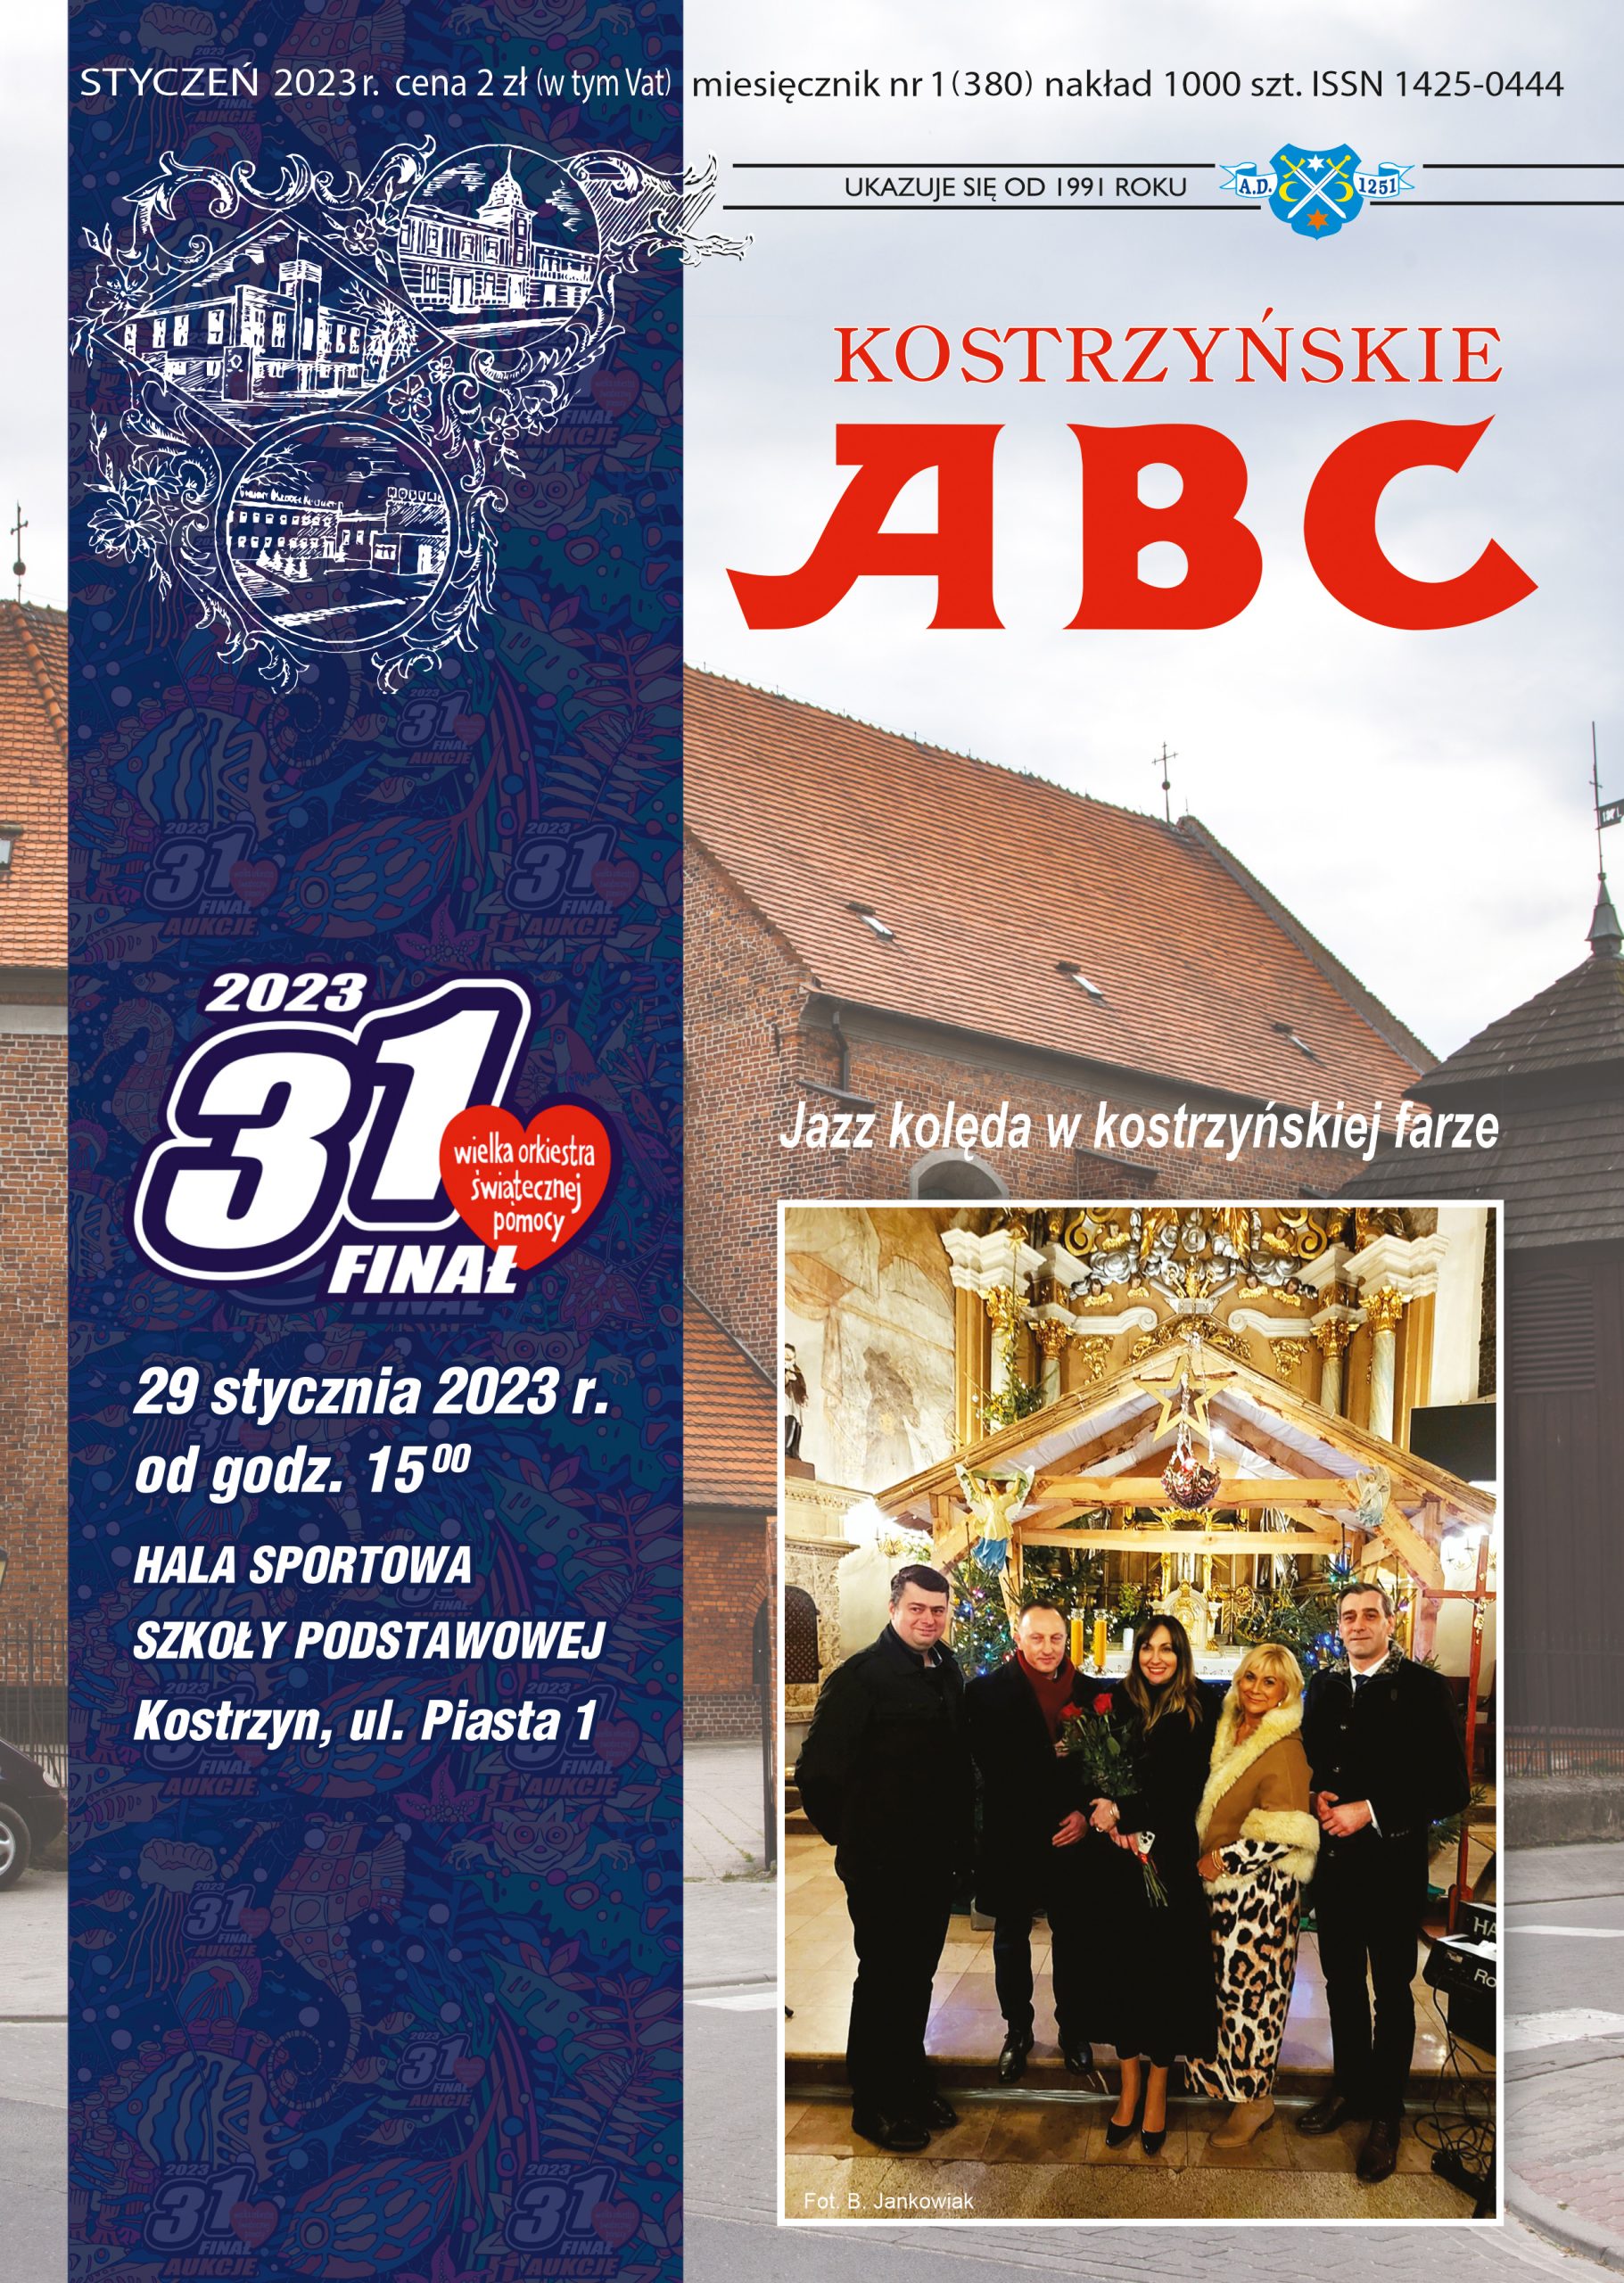 okładka stycznioweg wydania ABc na tle kościoła zdjęcie z uczestnikami koncertu Jazz kolęda